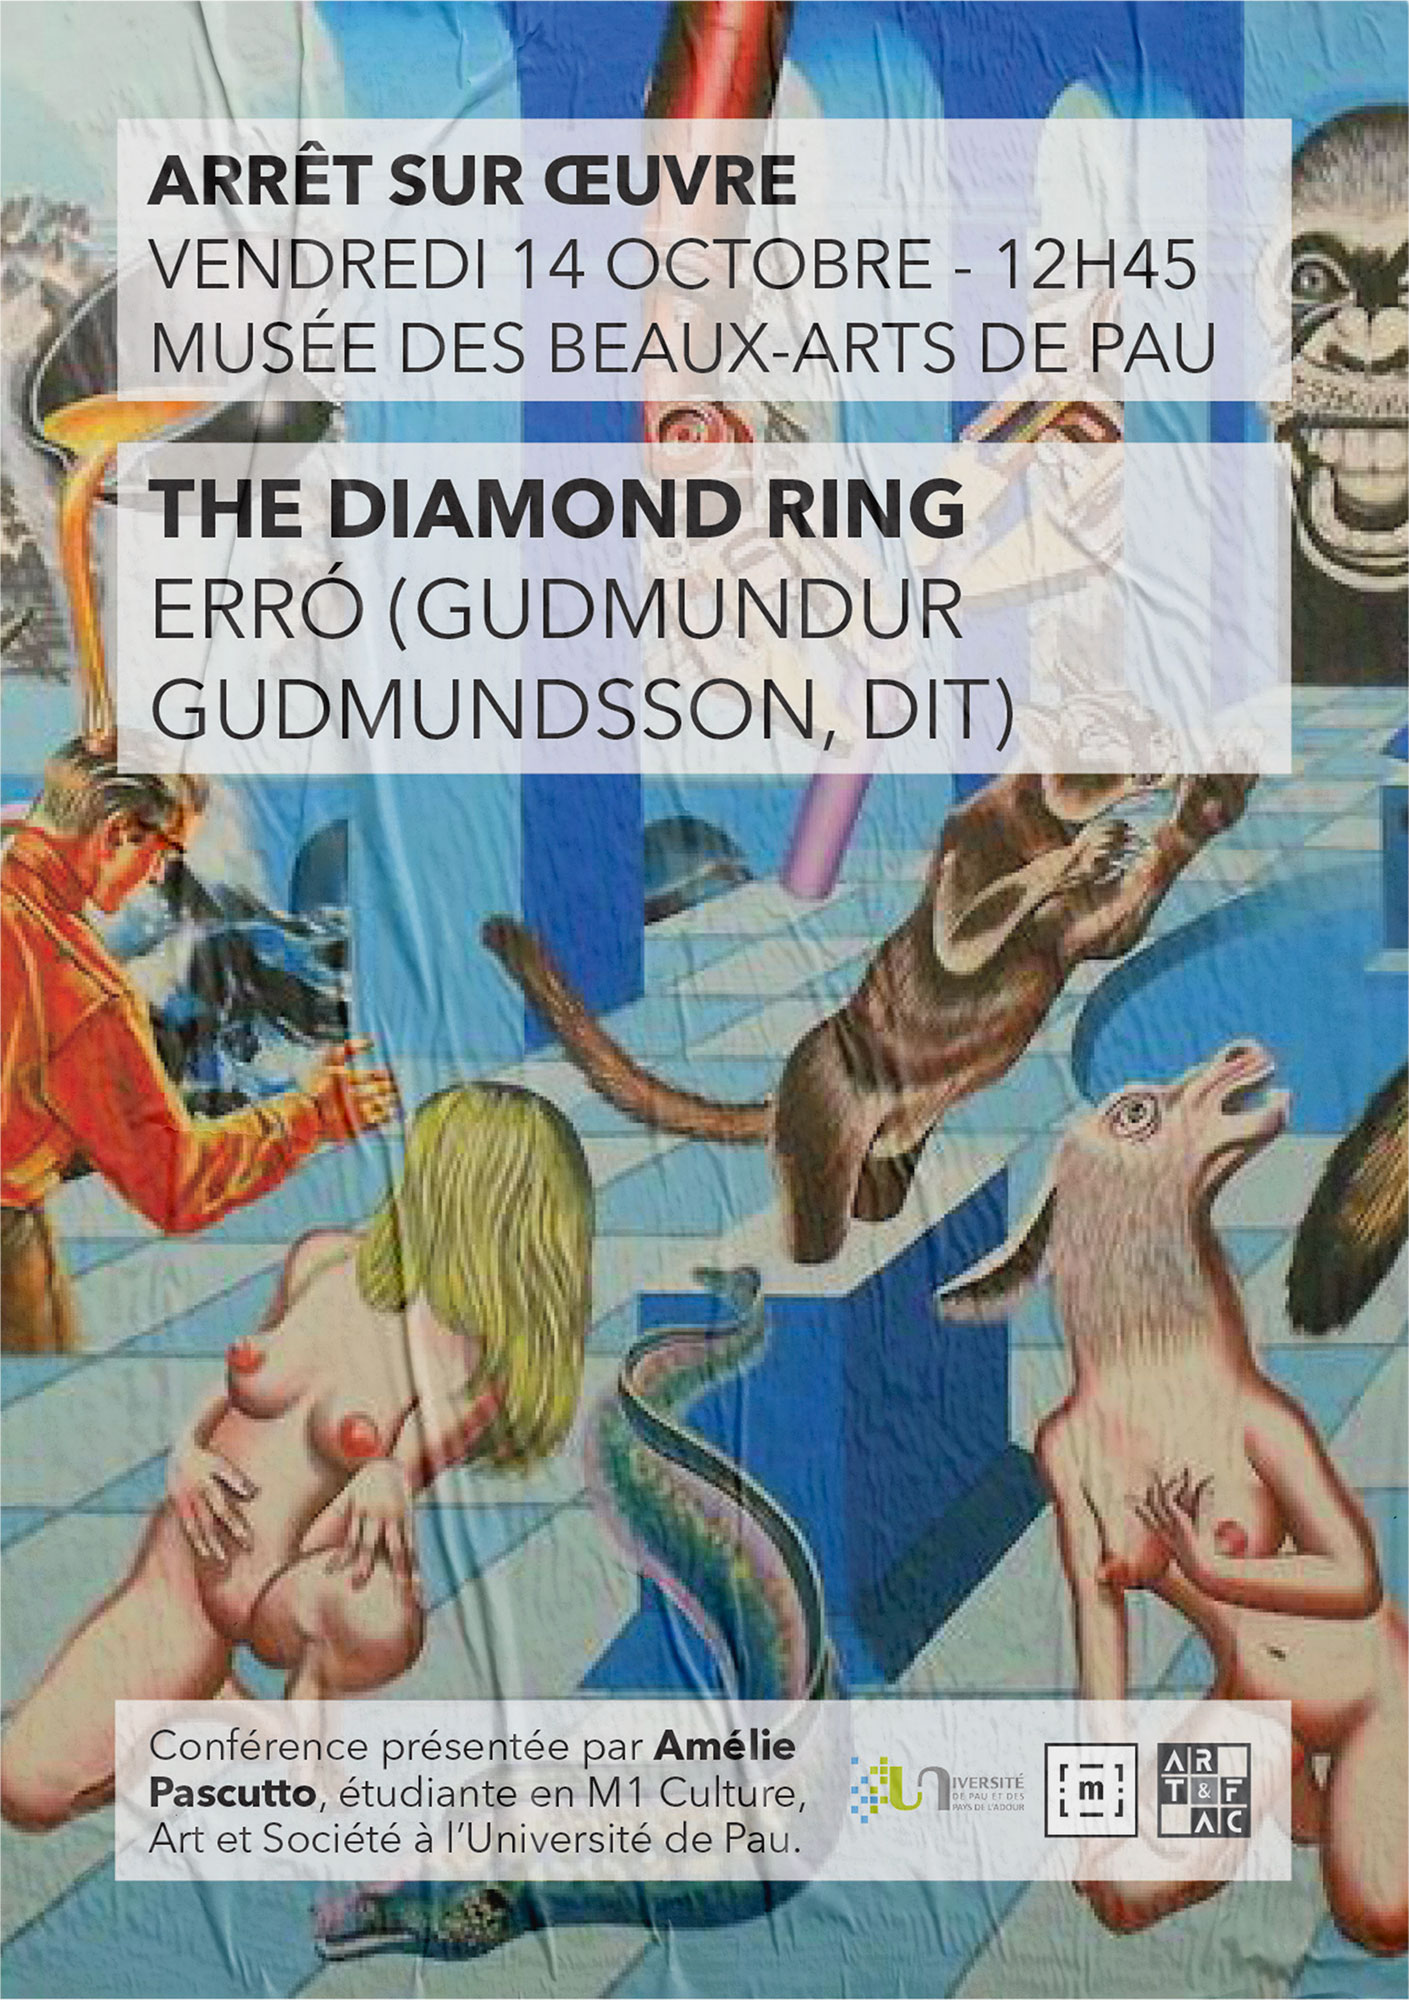 Affiche de la conférence sur l'oeuvre The Diamond ring de Erro présentée par Amélie Pascutto